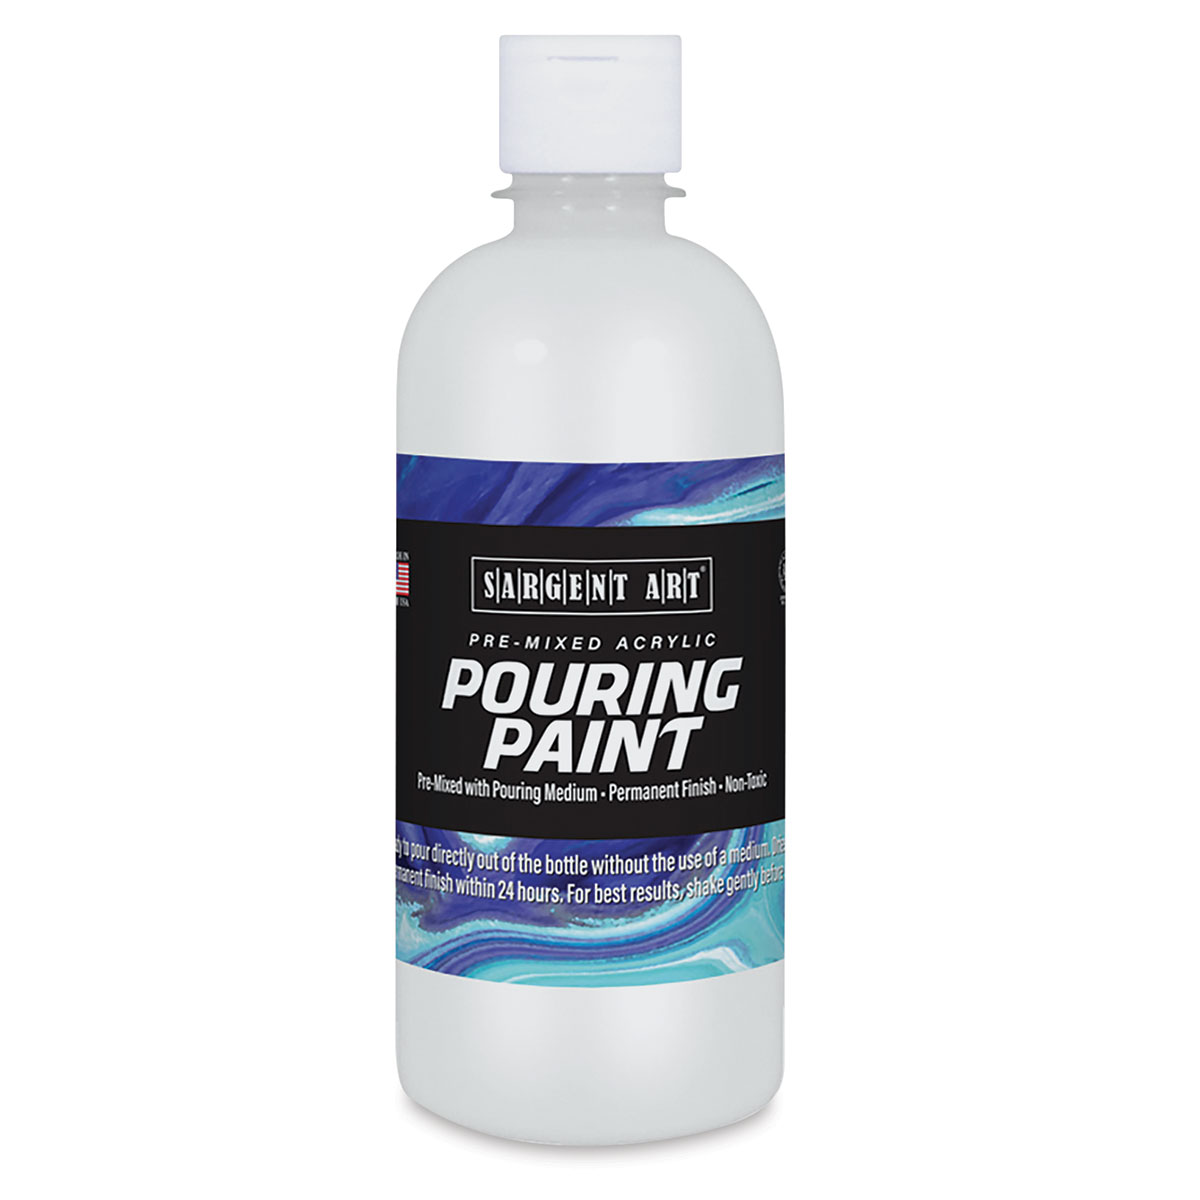 Sargent Art Pre-Mixed Acrylic Pouring Paint - Titanium White, 16 oz, Bottle